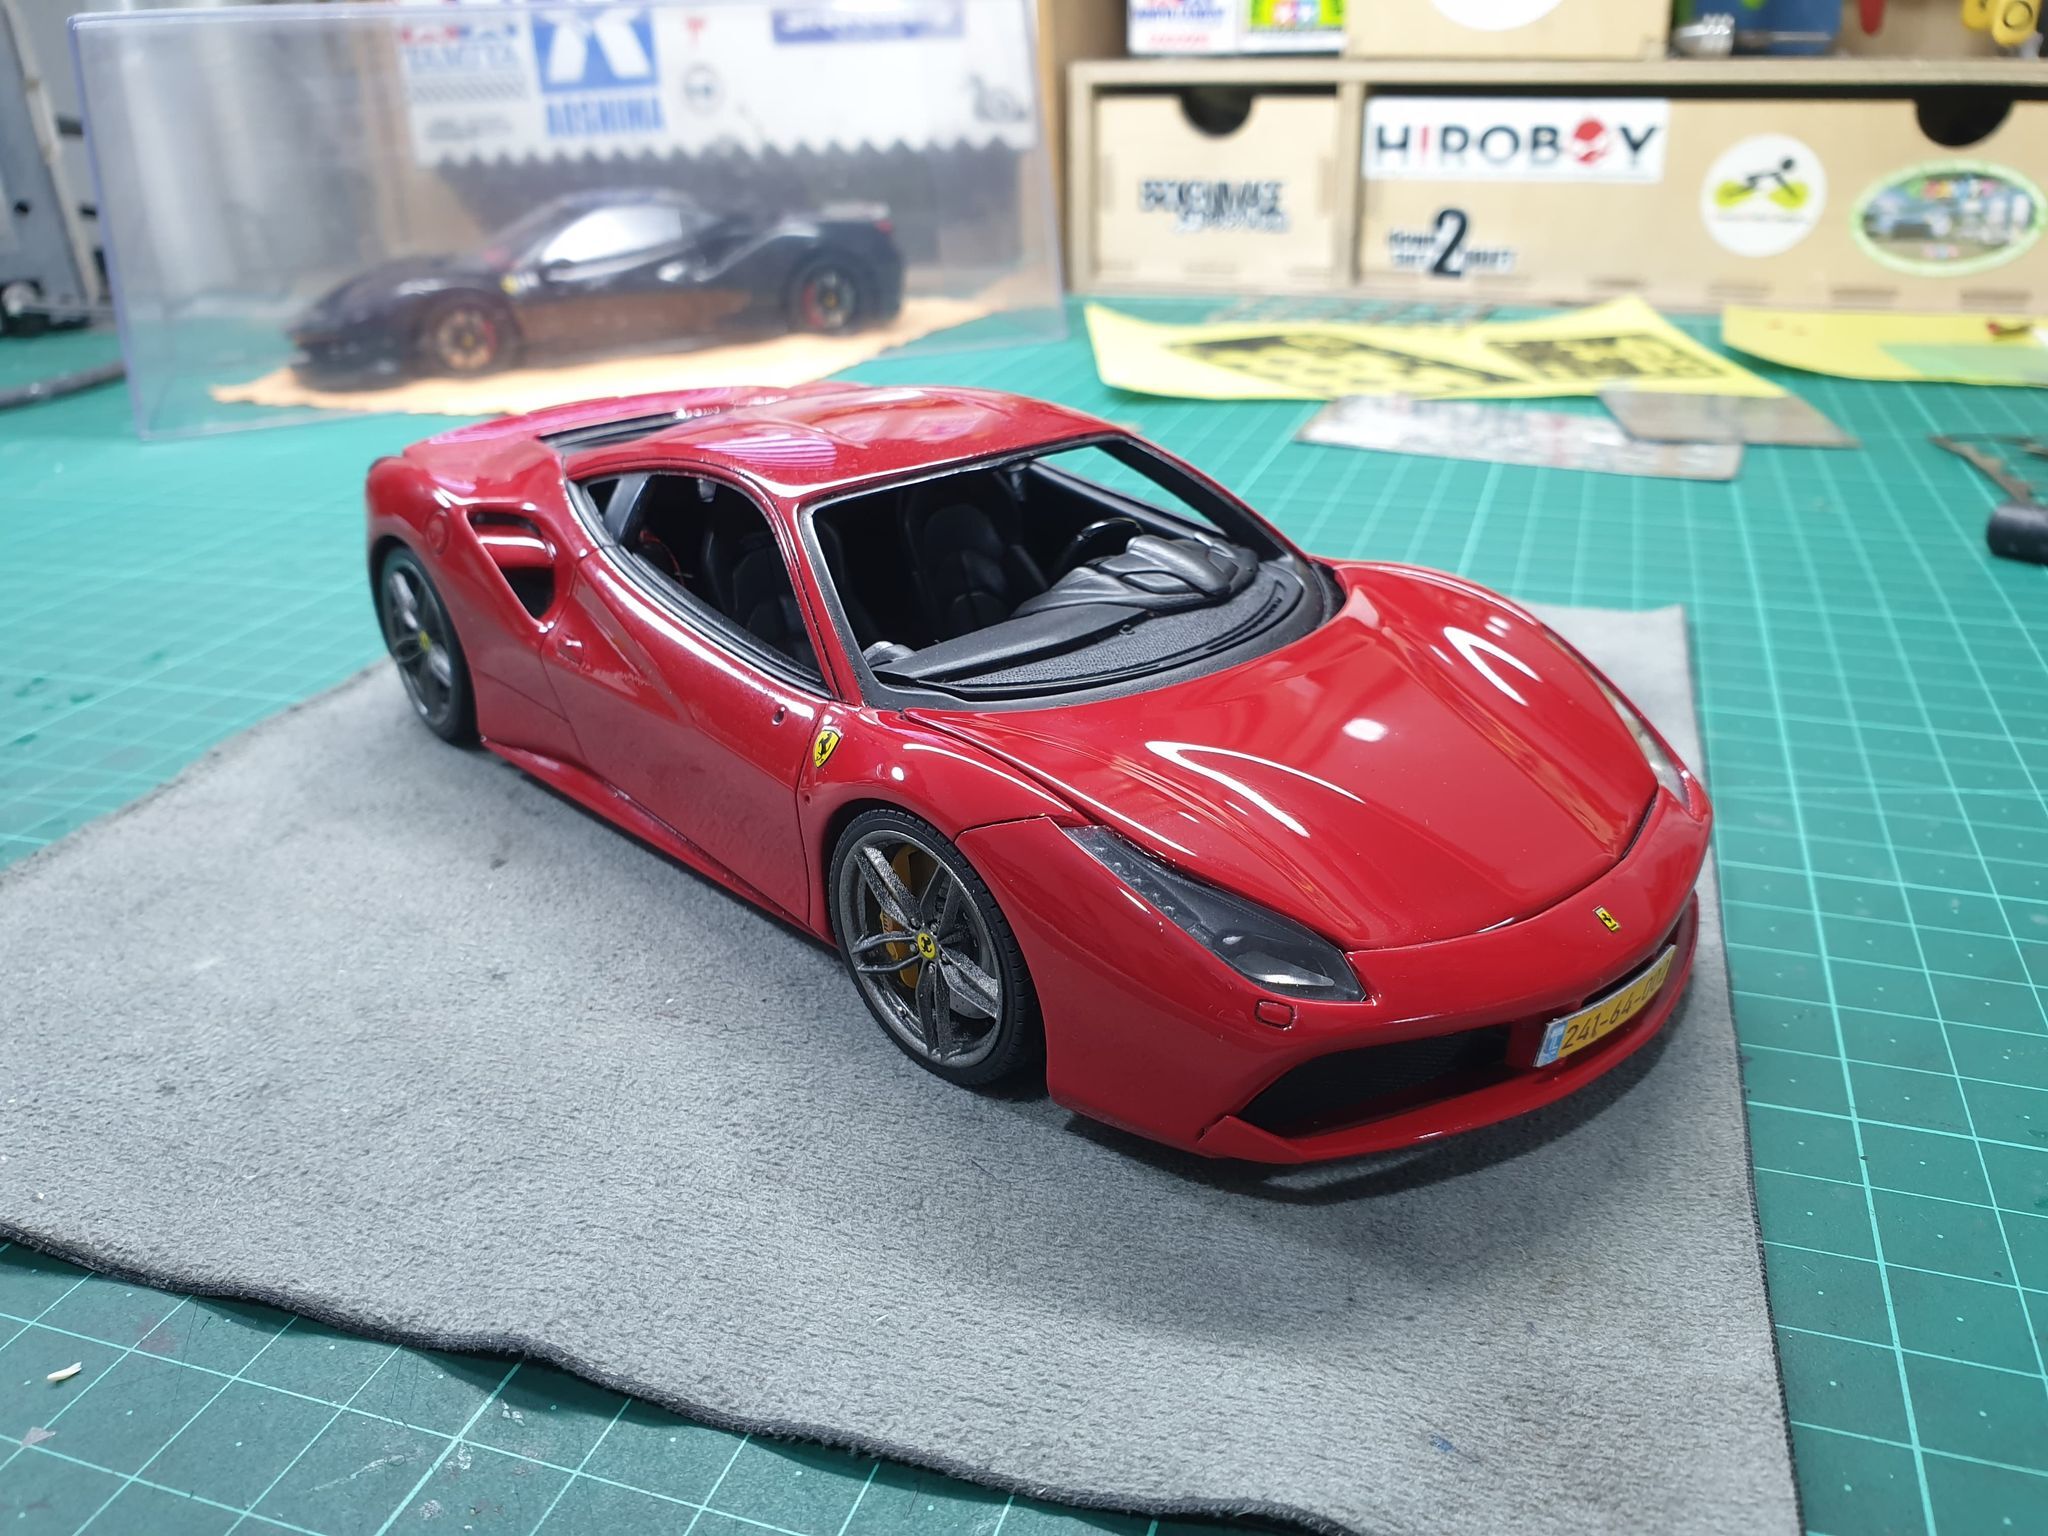 A 1/24 resin kit, Ferrari 375MM - Ready For Inspection - Vehicles